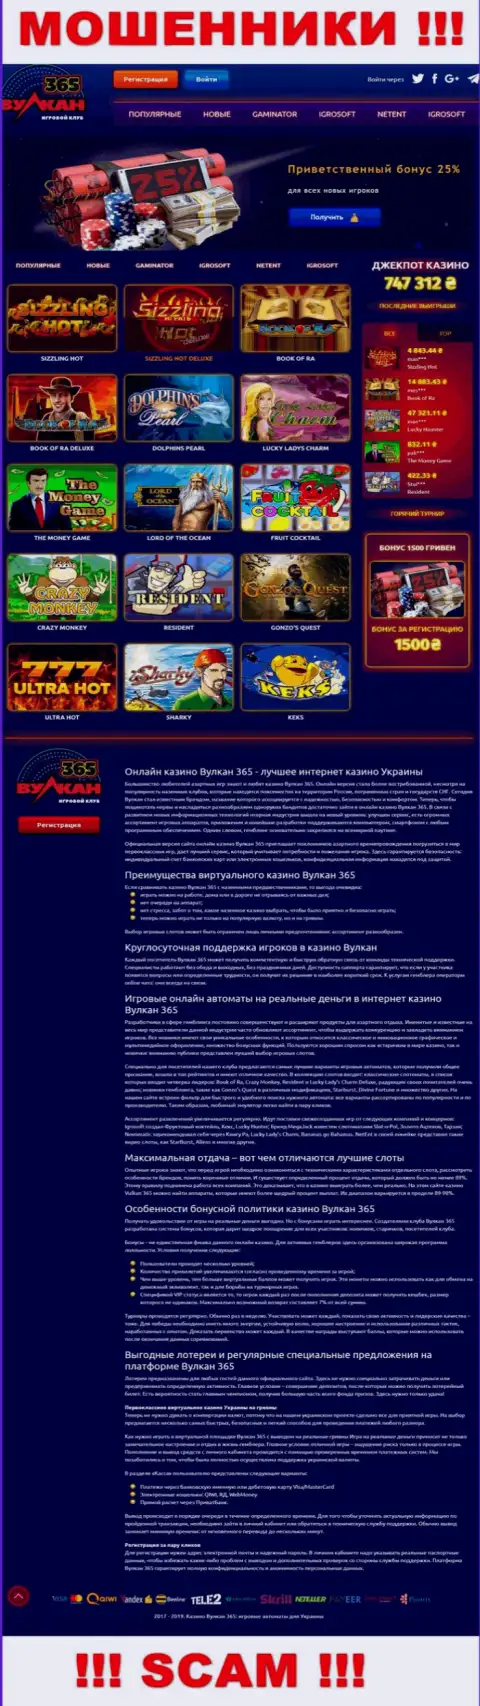 Официальный интернет-сервис Vulkan365 это красивая страничка для заманухи лохов